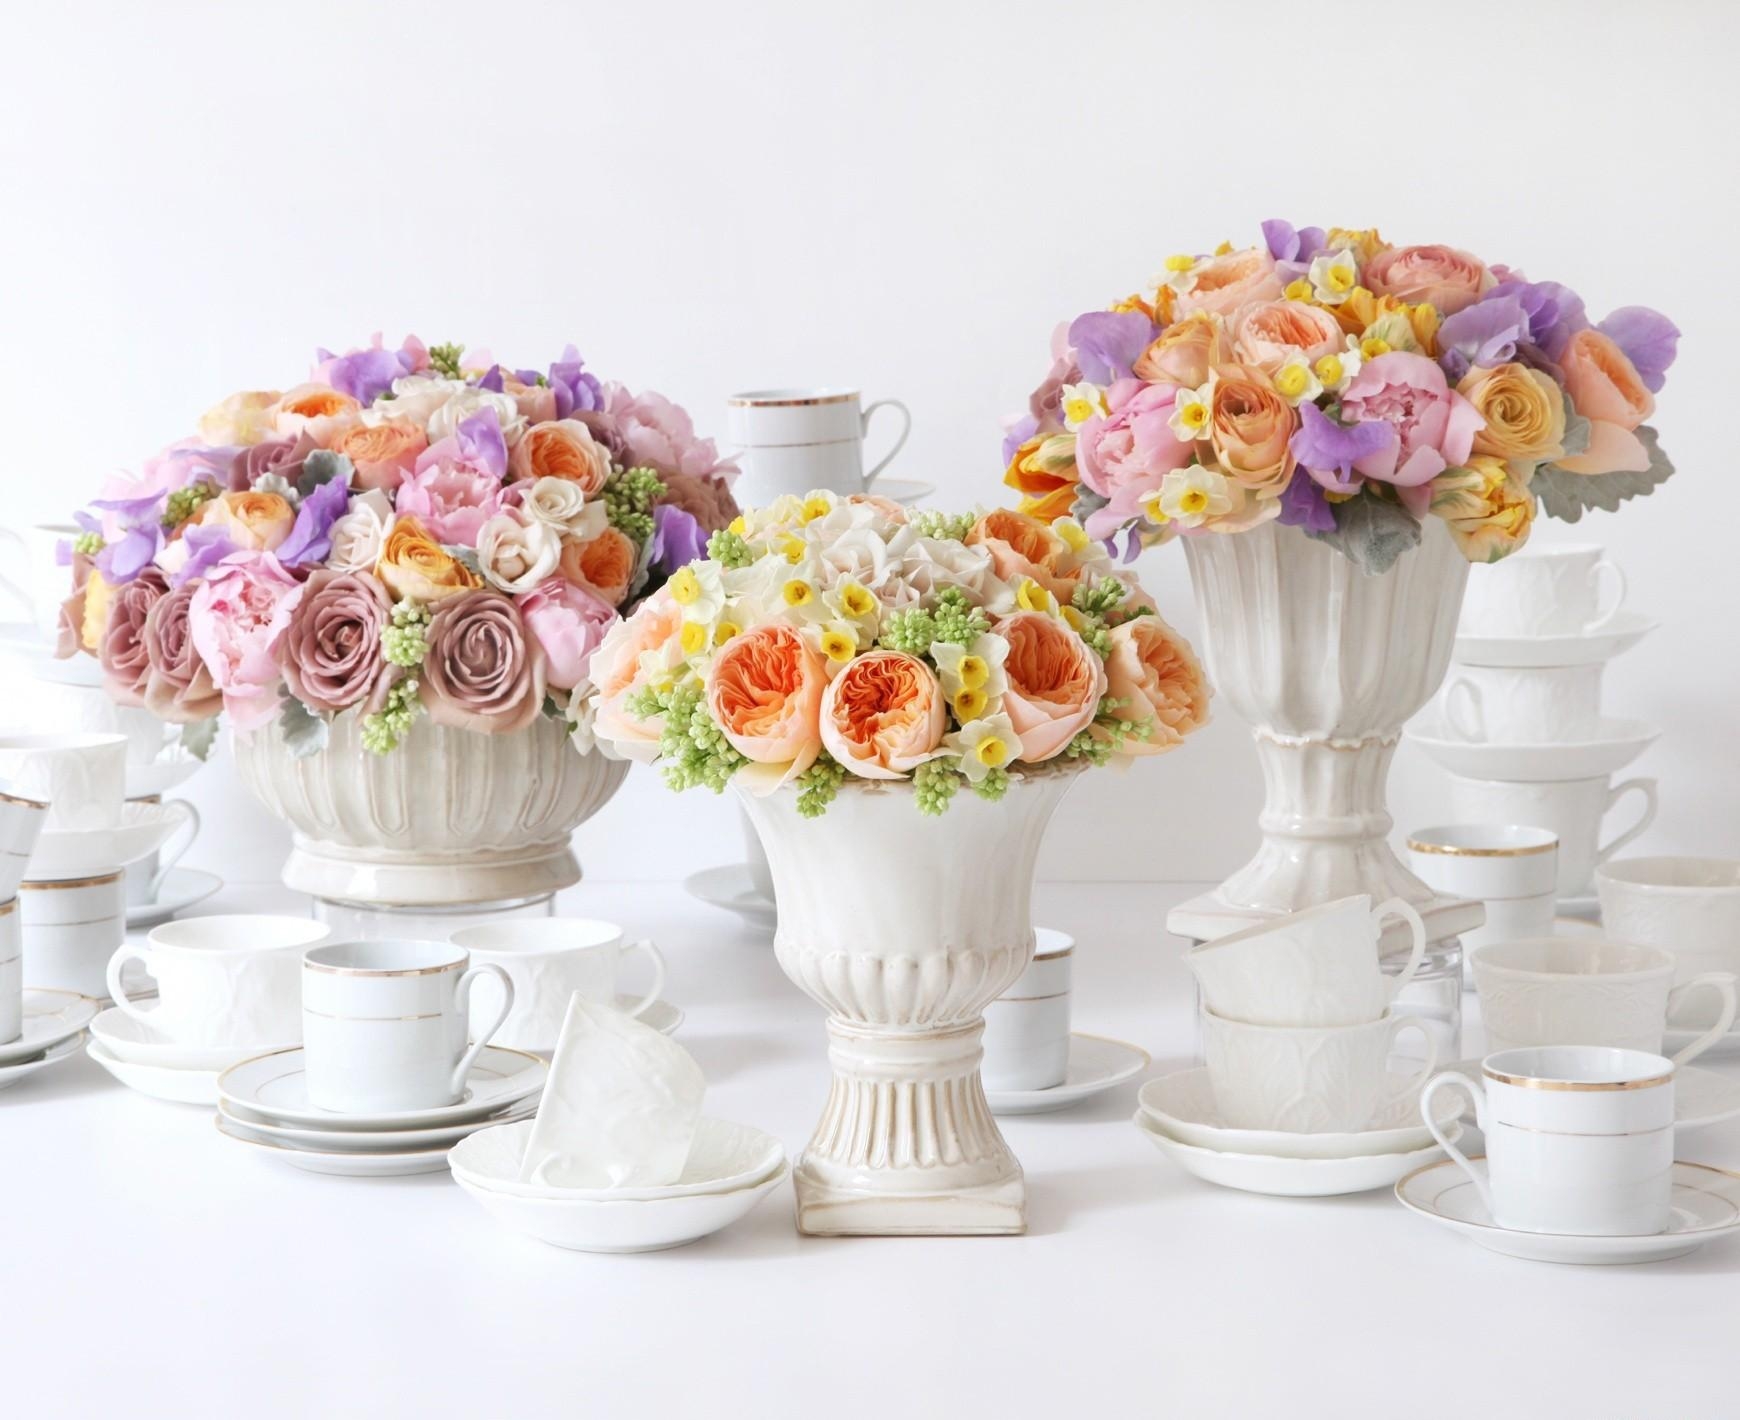 roses, narcissussi, flowers, bouquets, ranunculus, ranunkulus, vases, porcelain High Definition image